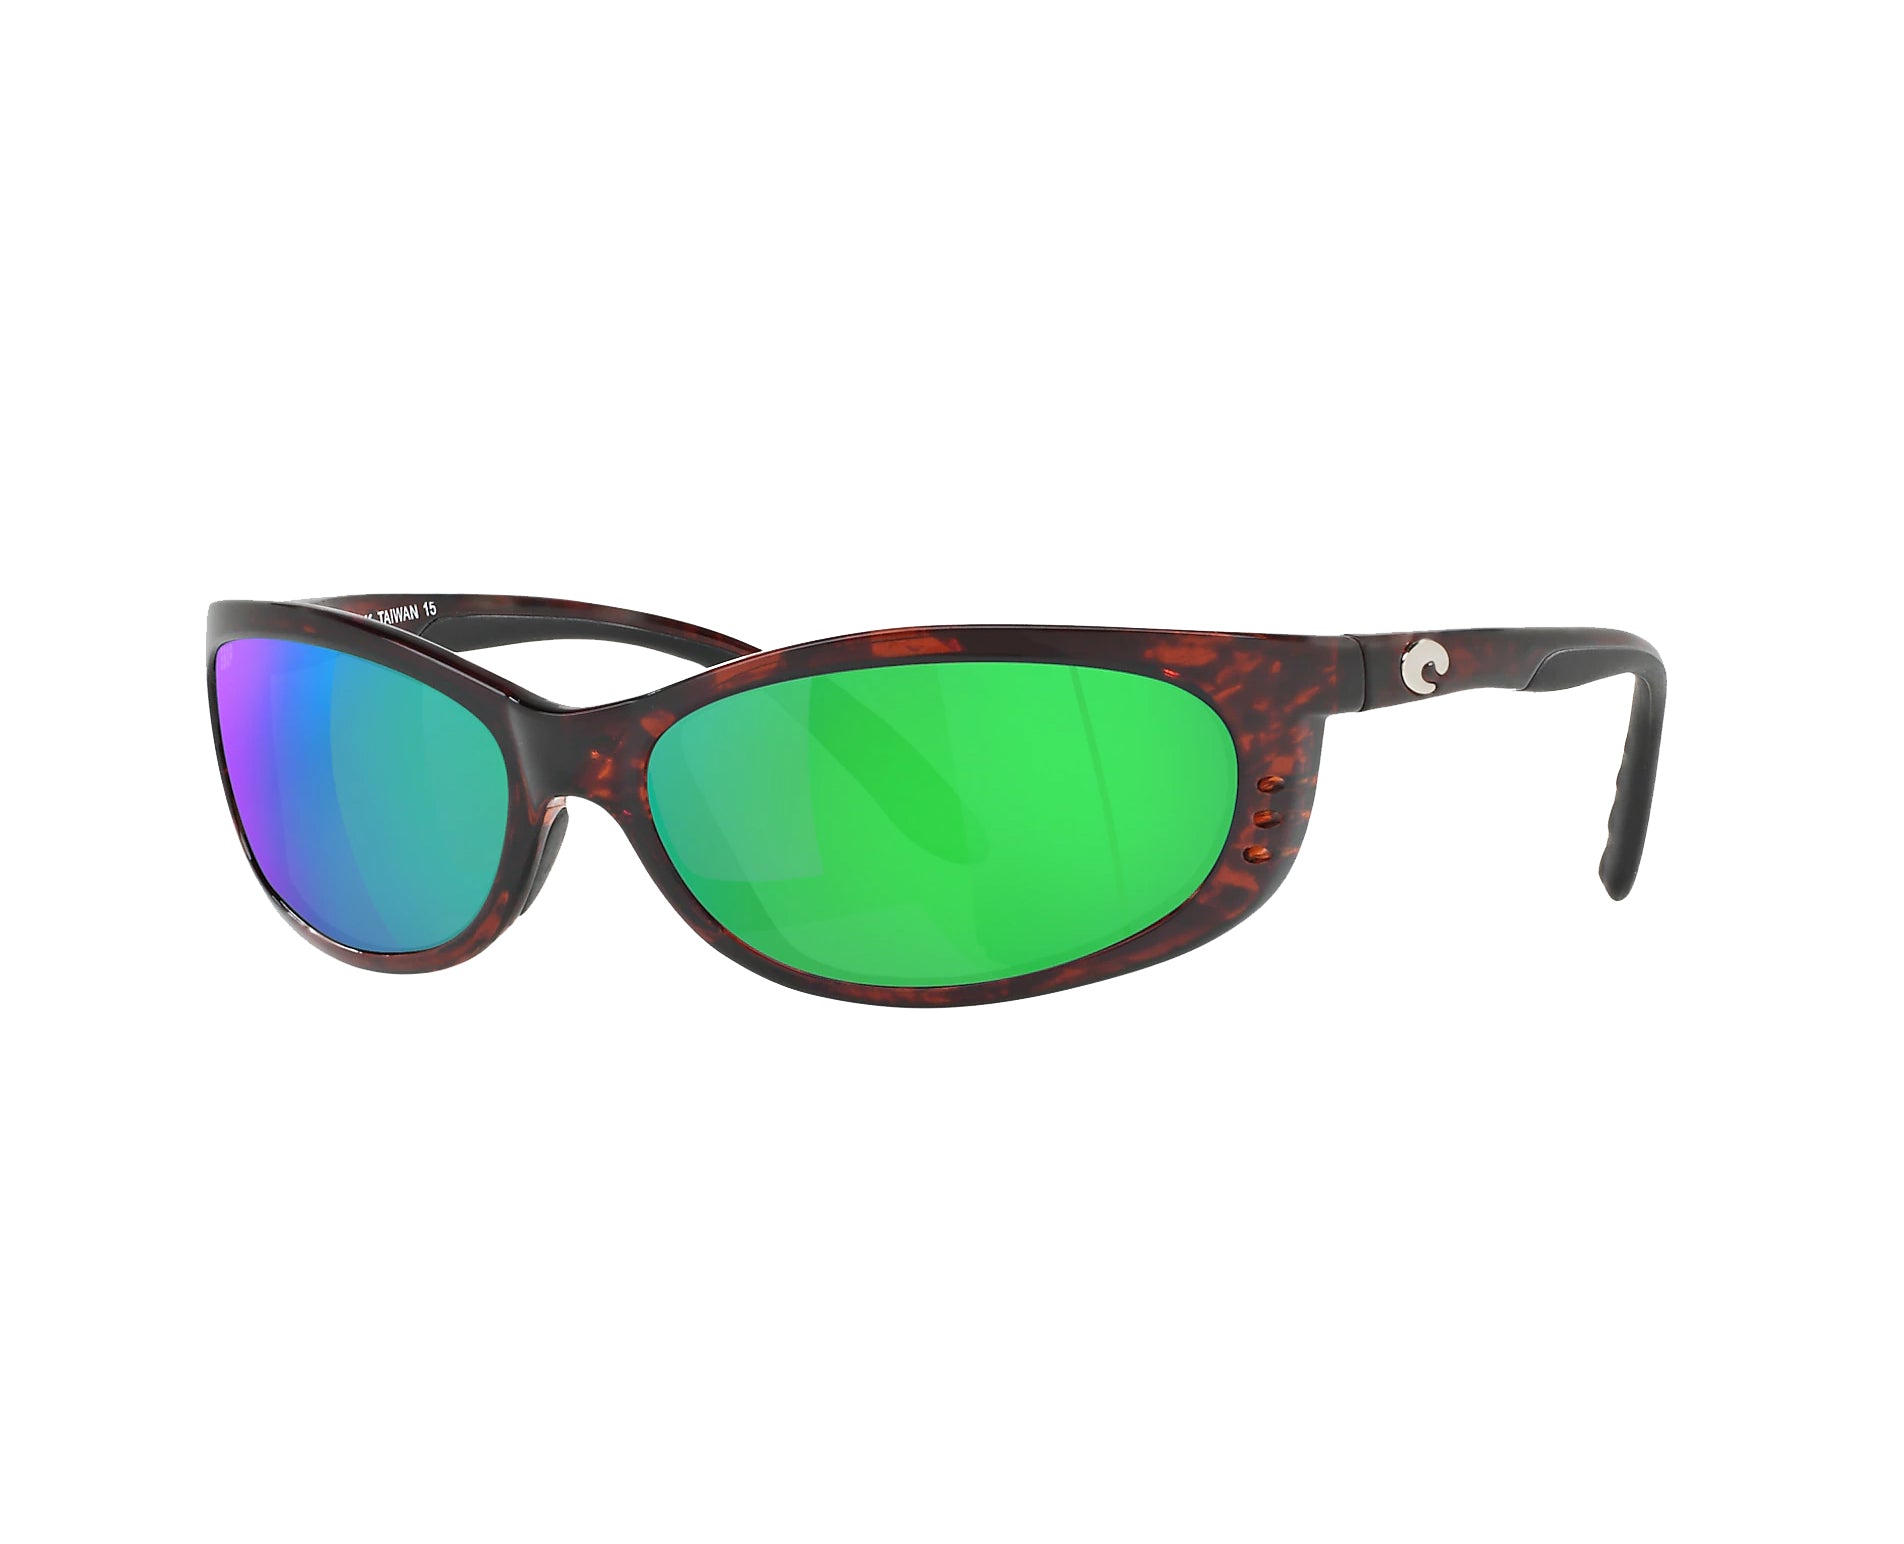 Costa Del Mar Fathom Sunglasses Tortoise GreenMirror 580P